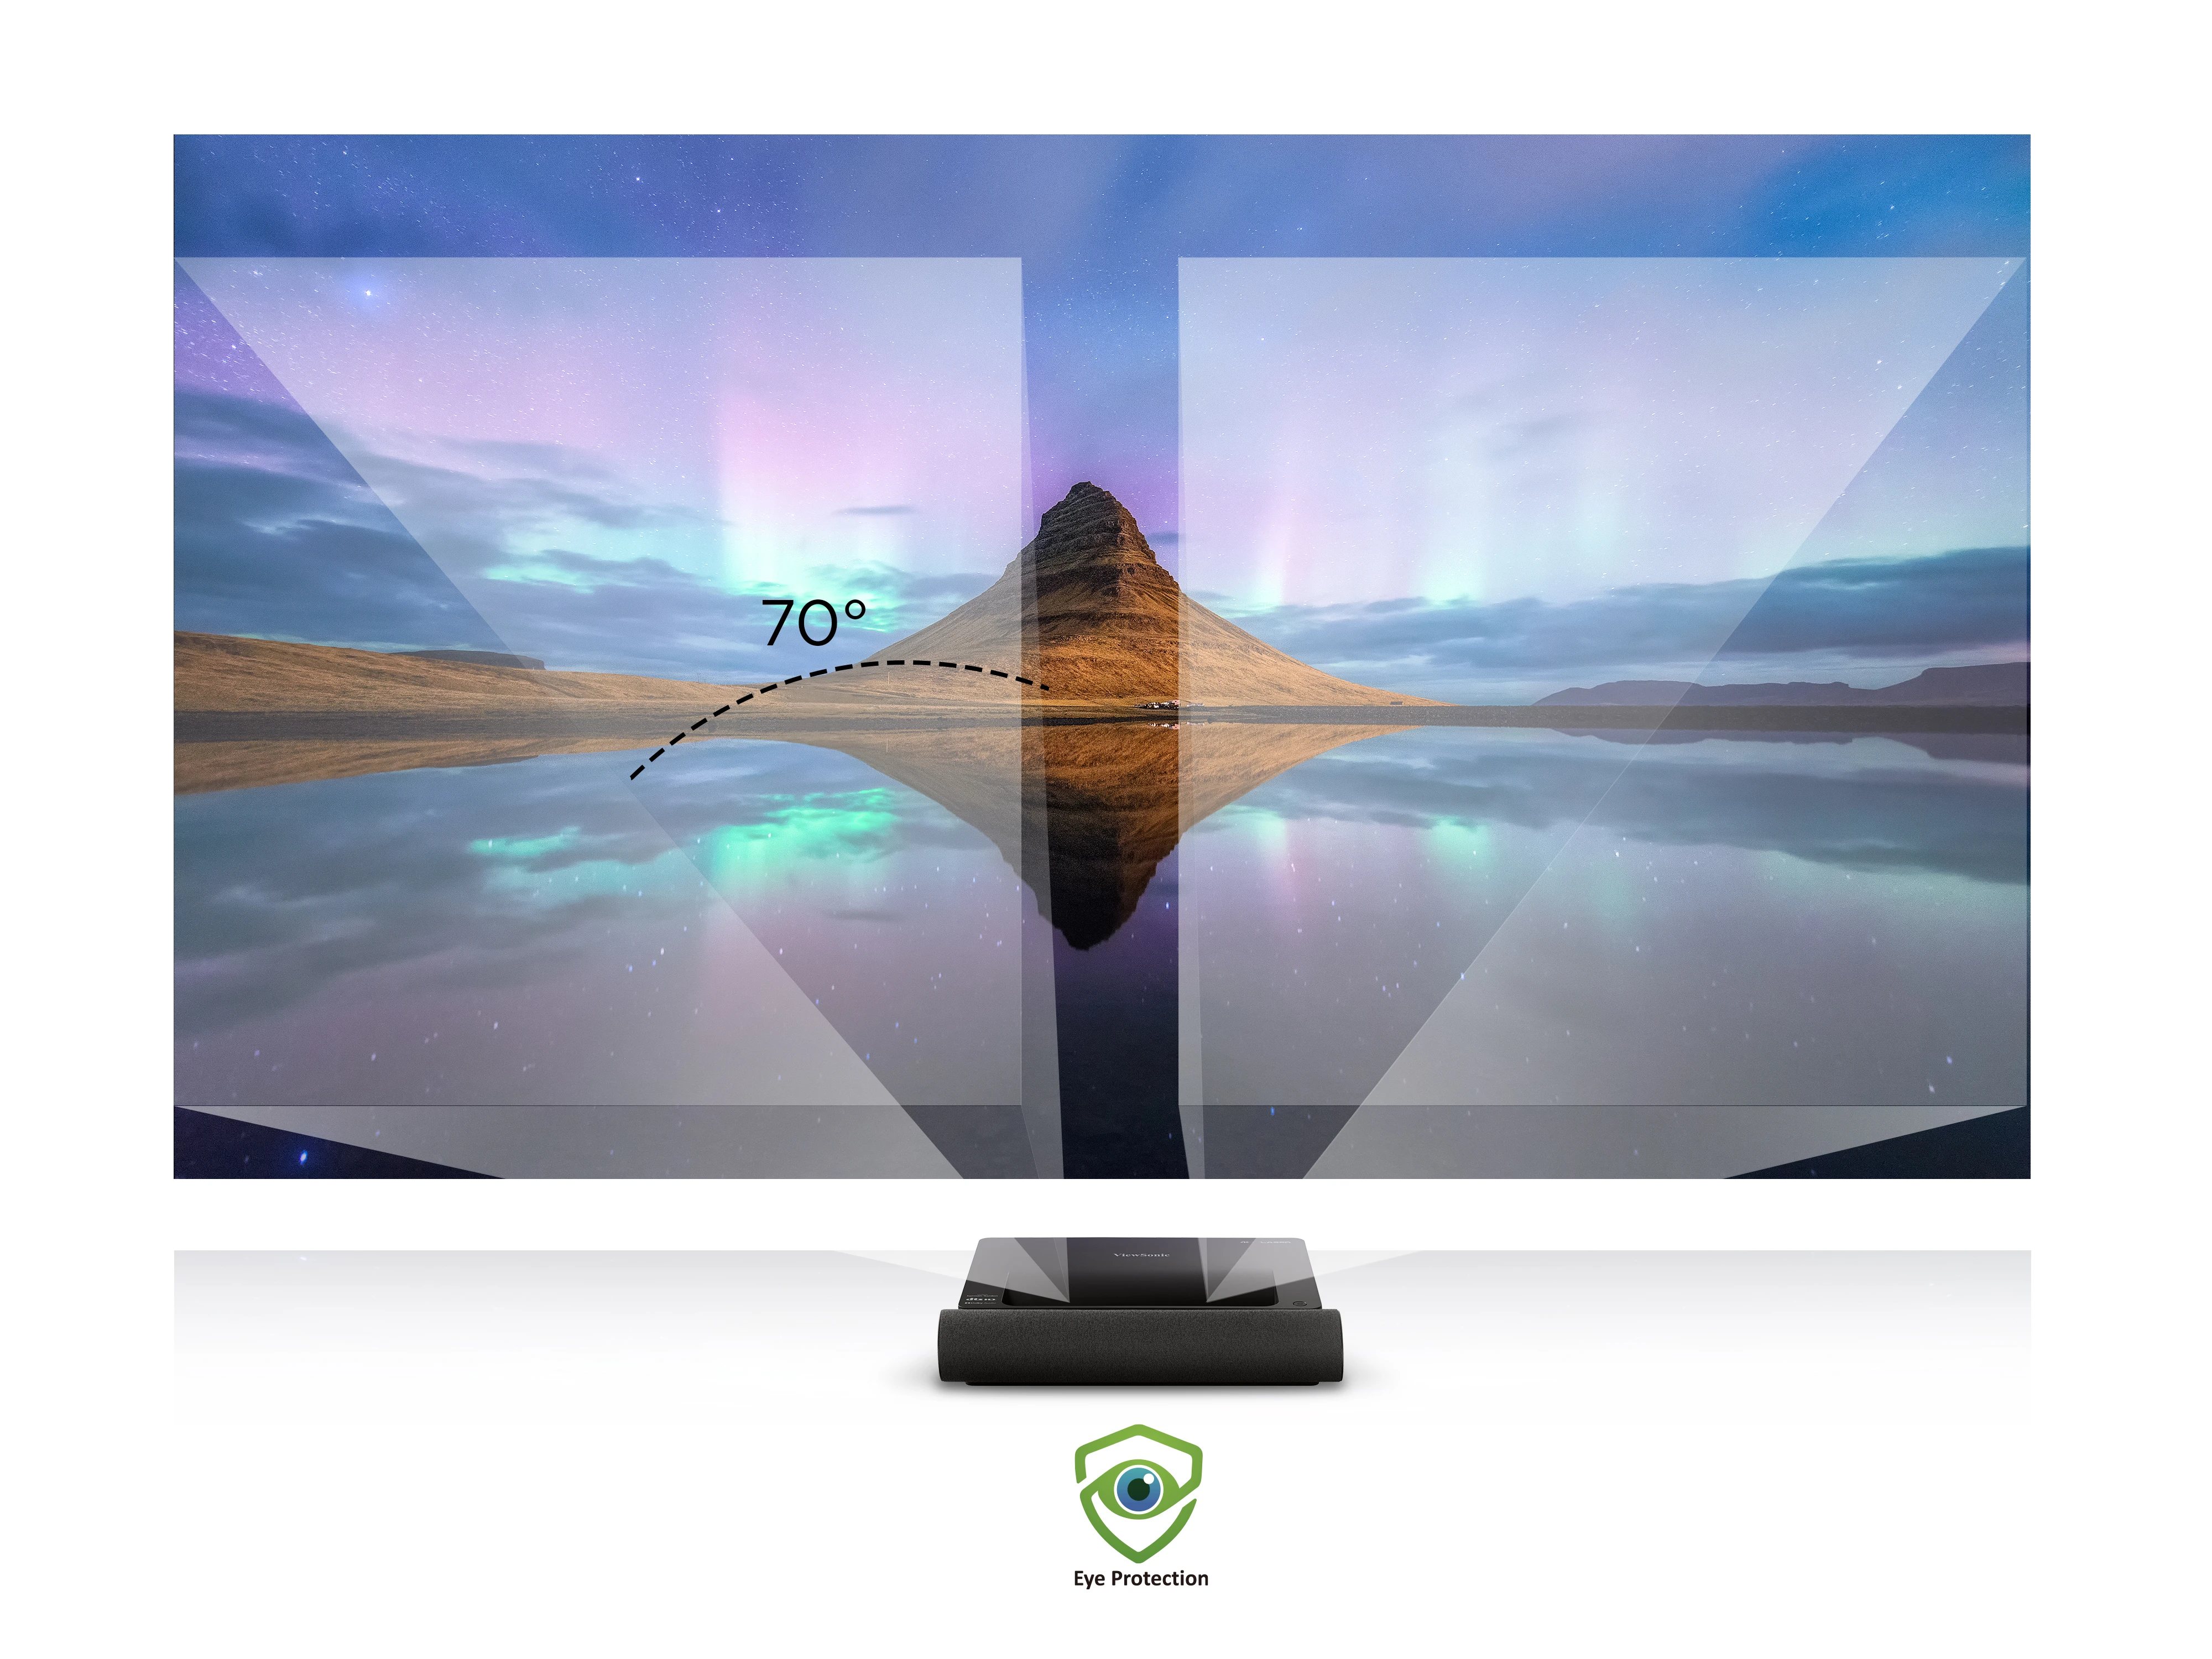 ViewSonic X2000B-4K, Proyector Láser 4K HDR Smart de Alcance Ultracorto